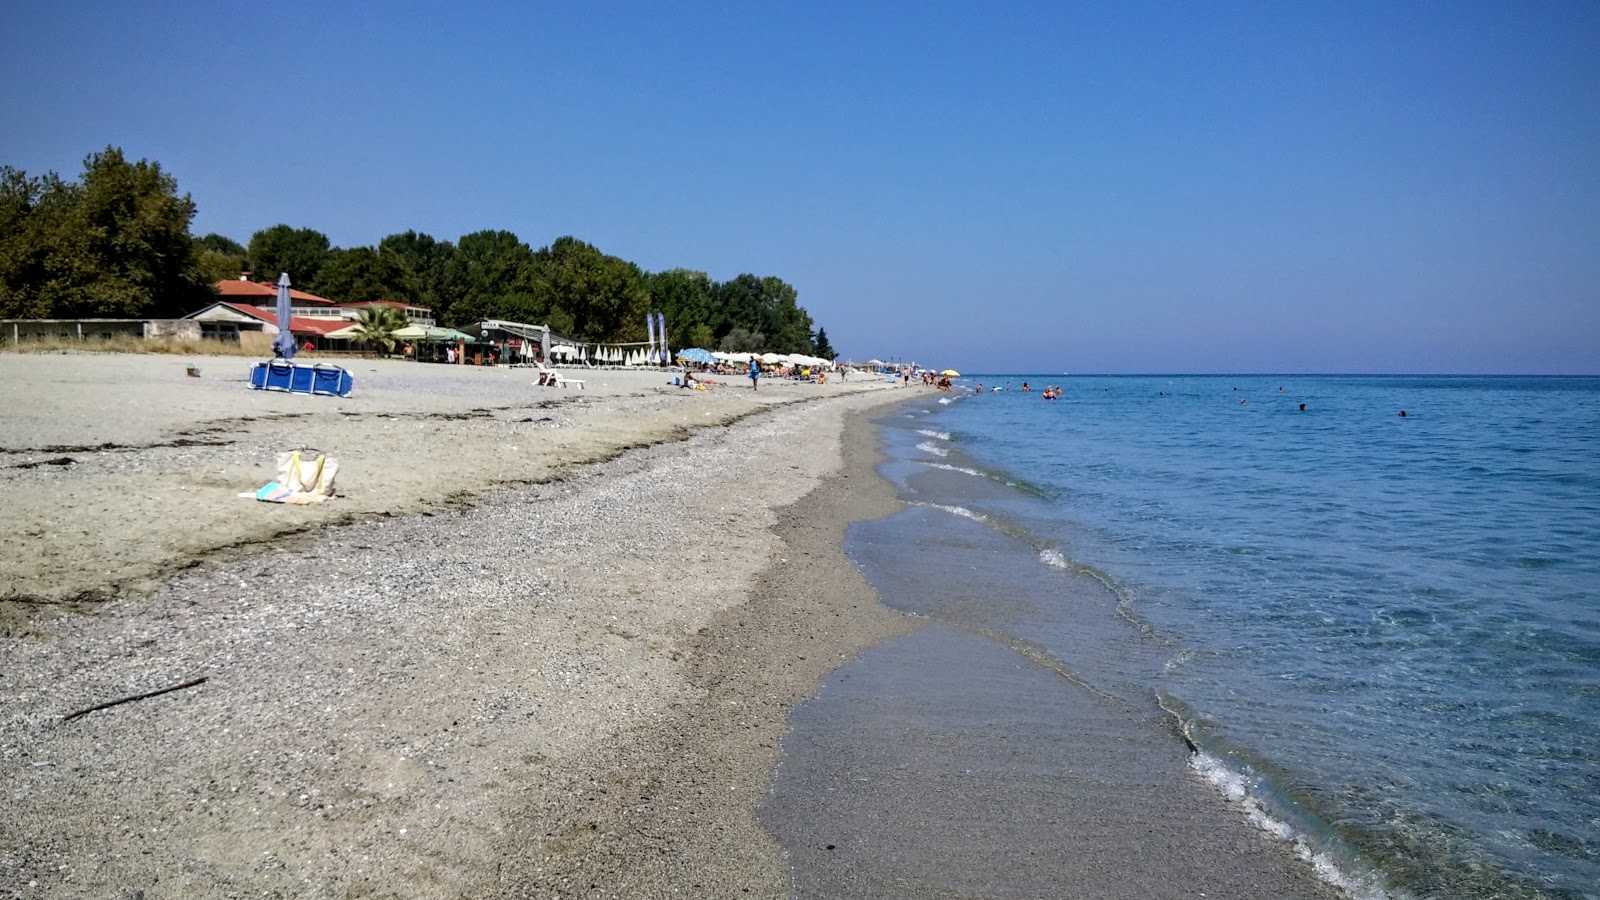 Zdjęcie Mylos beach z przestronna plaża